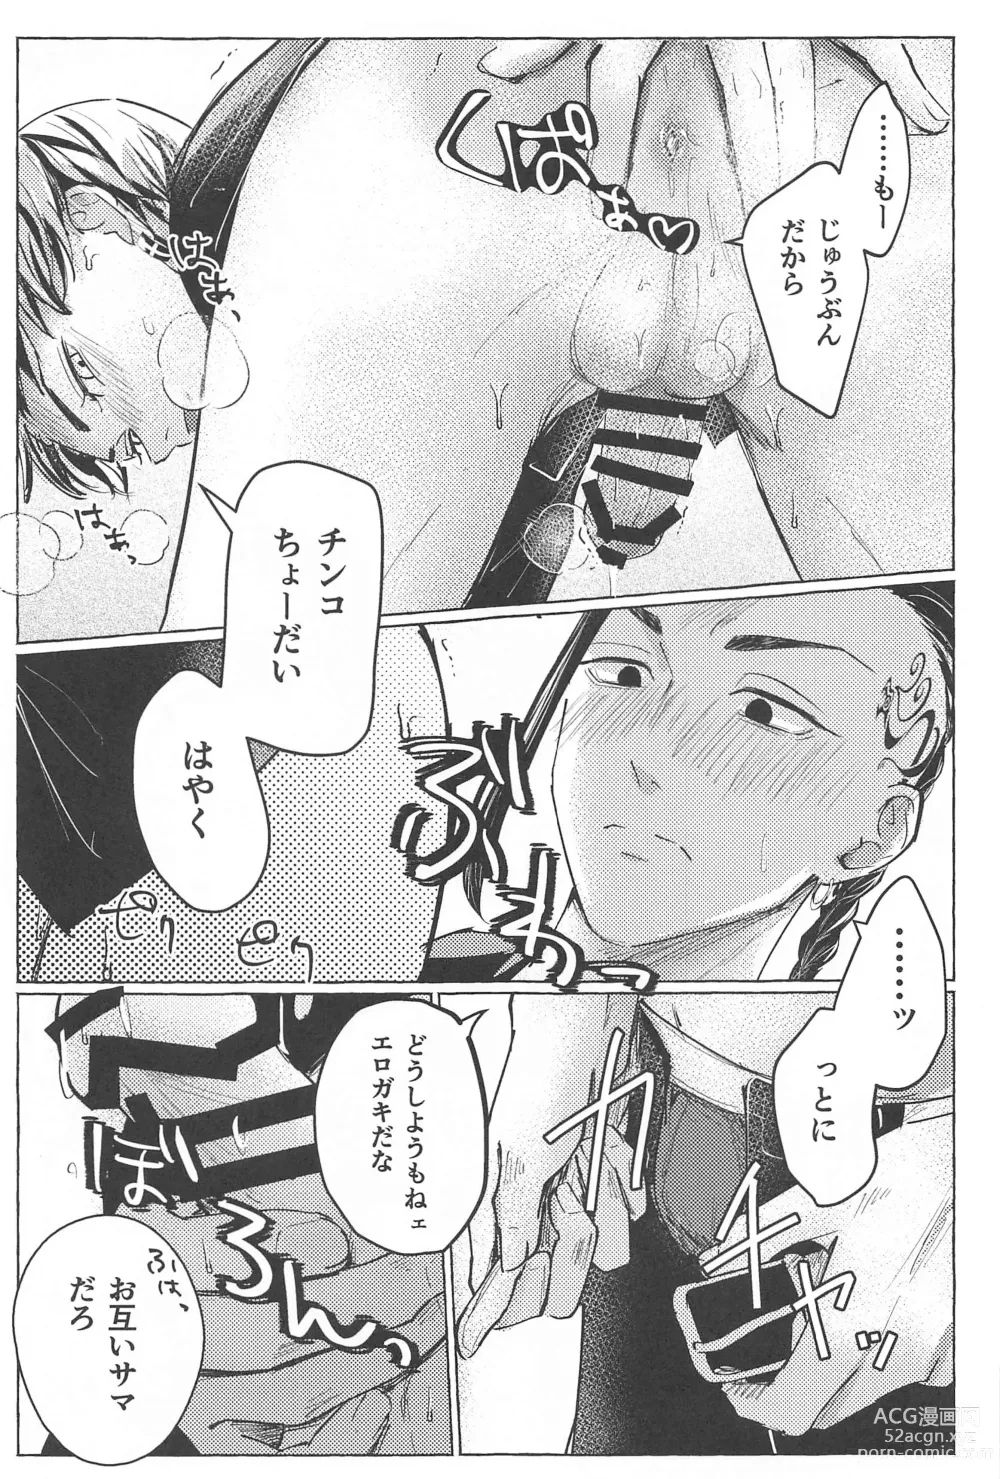 Page 10 of doujinshi 27-sai no Tokkoufuku